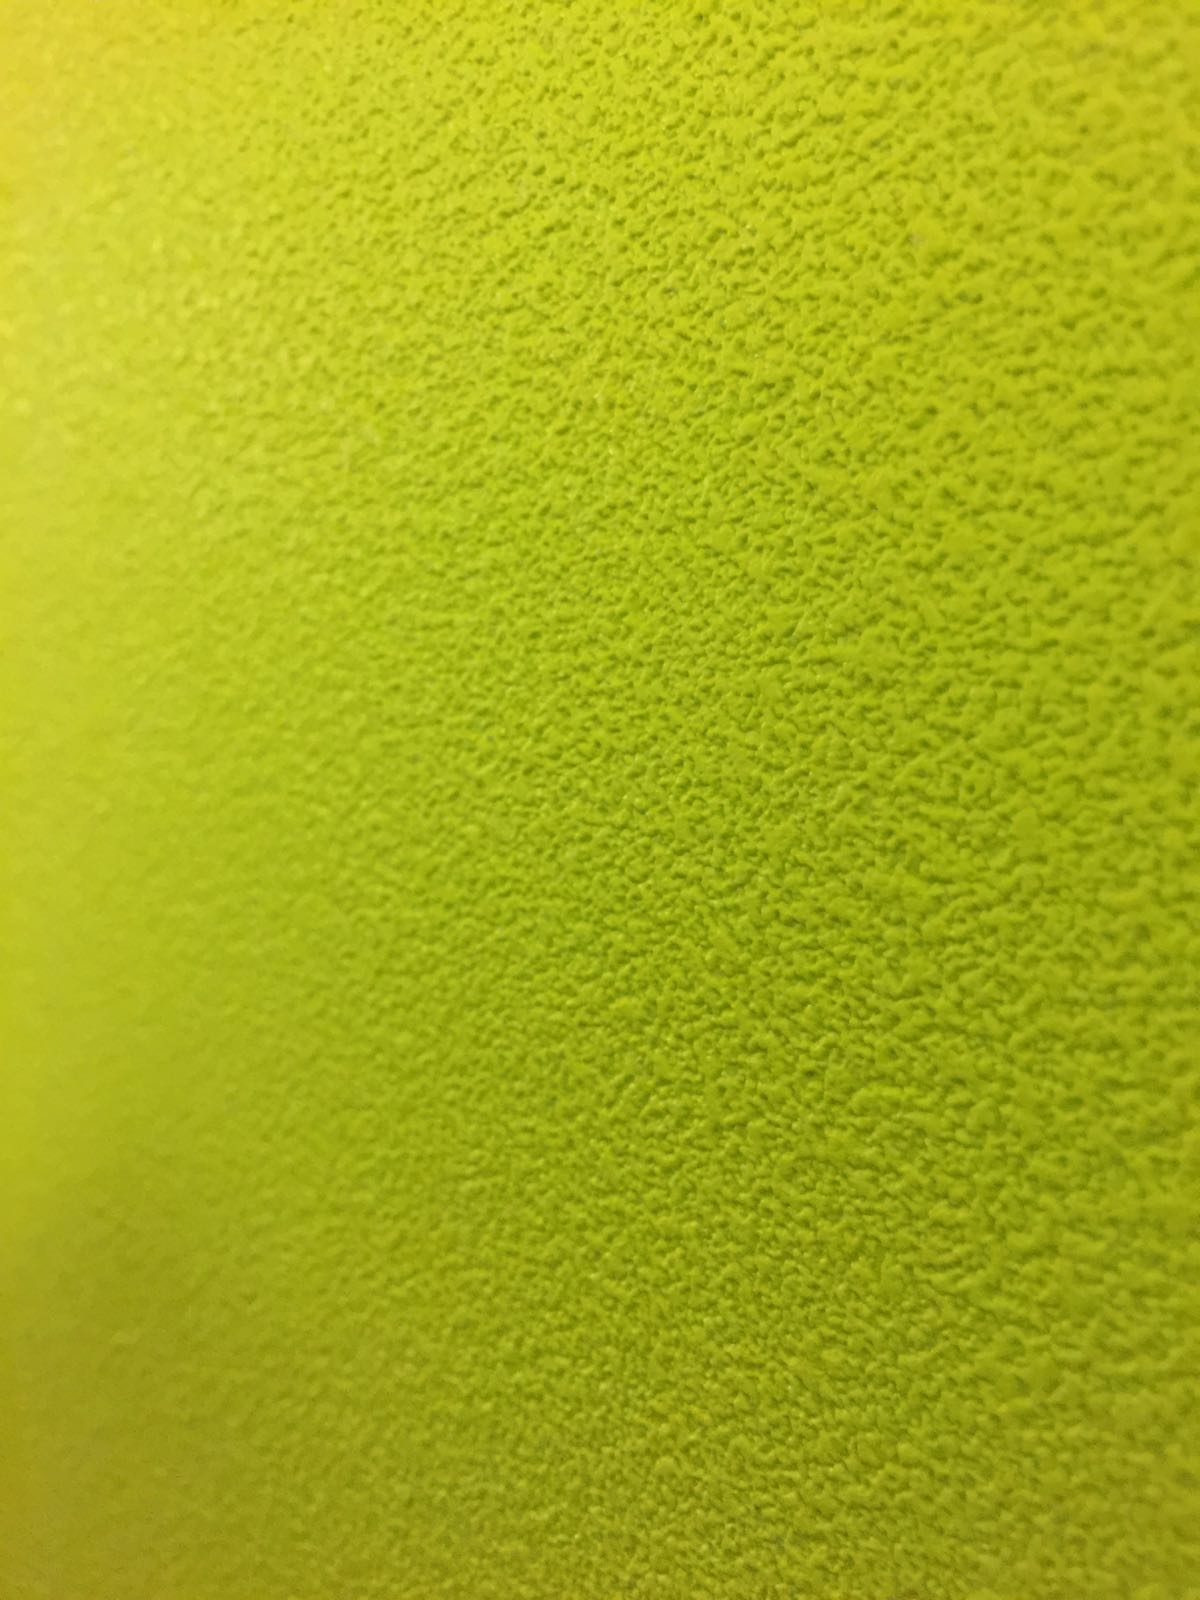 楽天市場 壁紙 のりなし 1m単位 切り売り イエローグリーン 黄緑の壁紙 セレクション 壁紙屋本舗 壁紙屋本舗 カベガミヤホンポ みんなのレビュー 口コミ